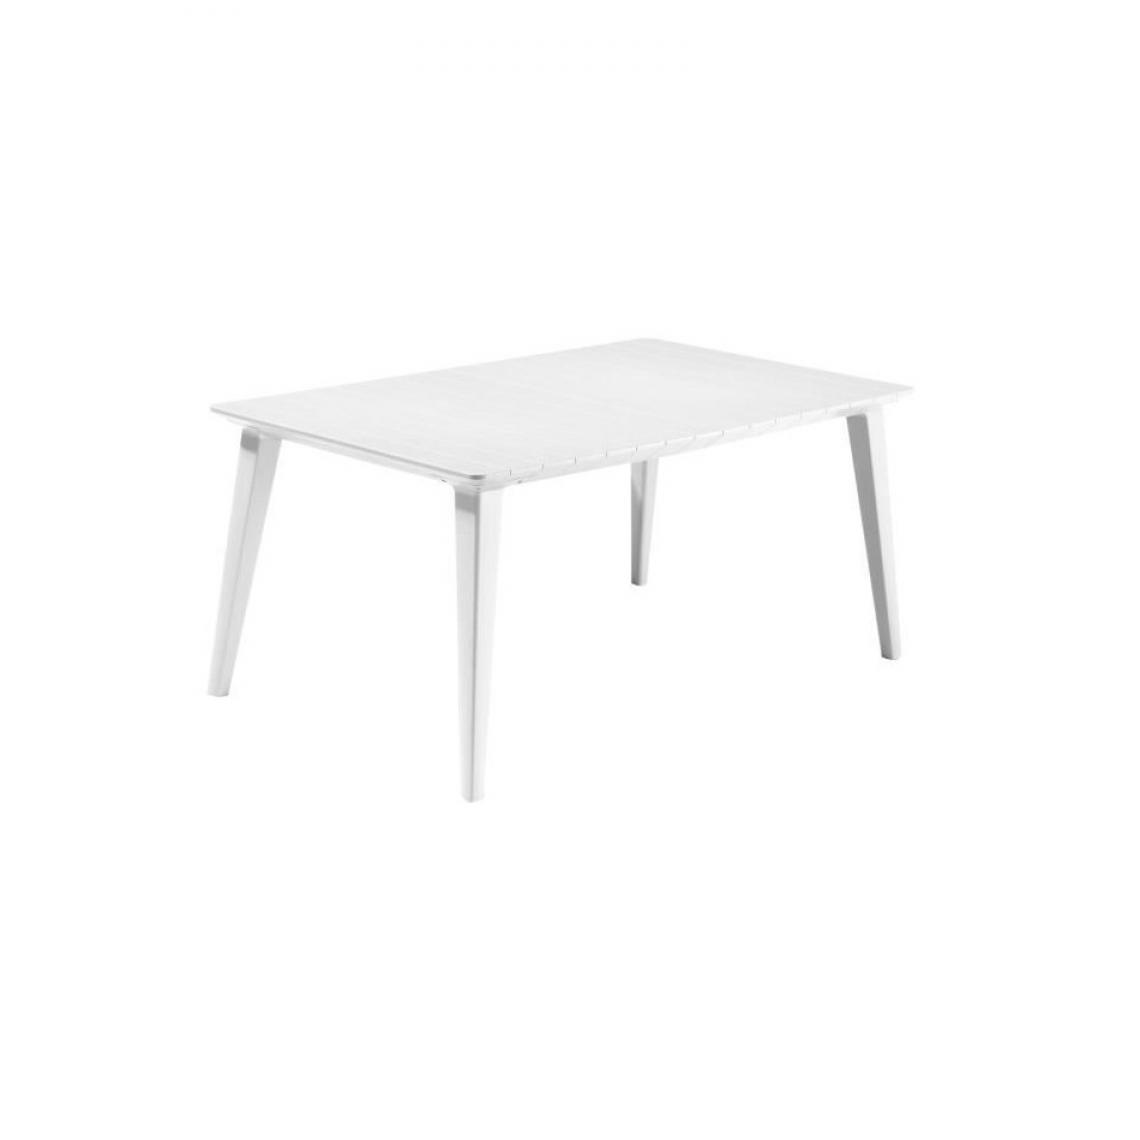 Allibert-Jardin - Allibert Jardin Table Lima 160 6 Personnes - Design Contemporain - Blanc - Ensembles tables et chaises